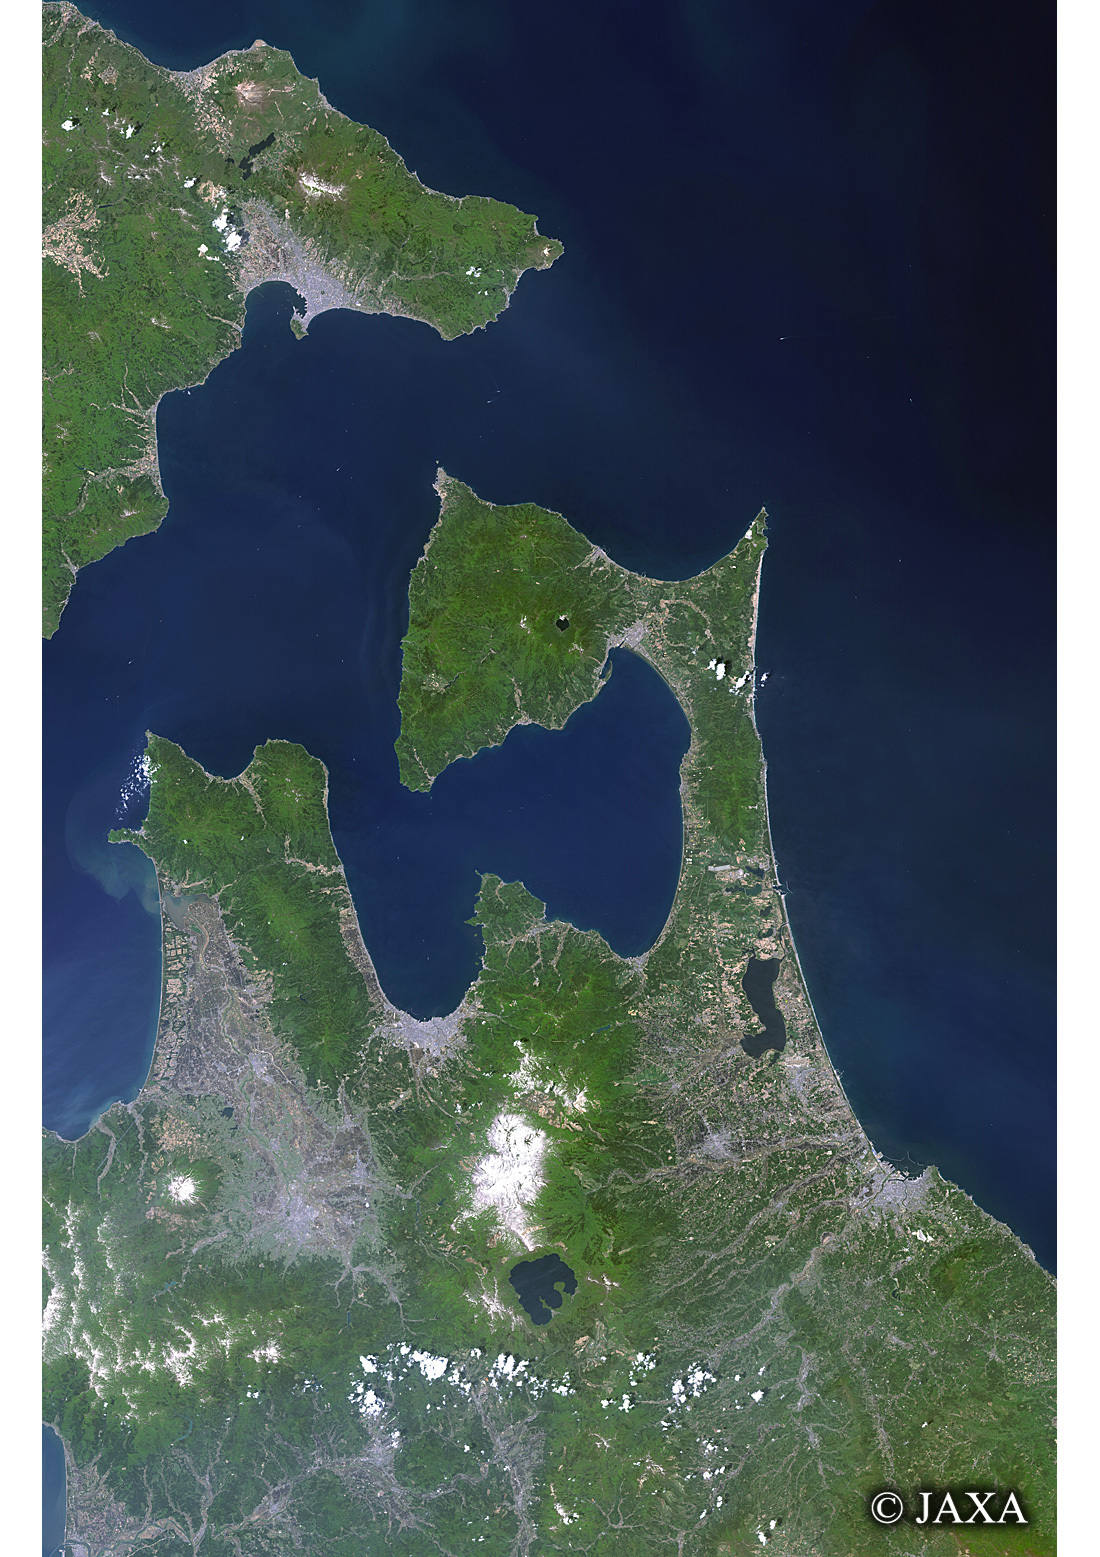 だいちから見た日本の都市 津軽海峡の初夏:衛星画像